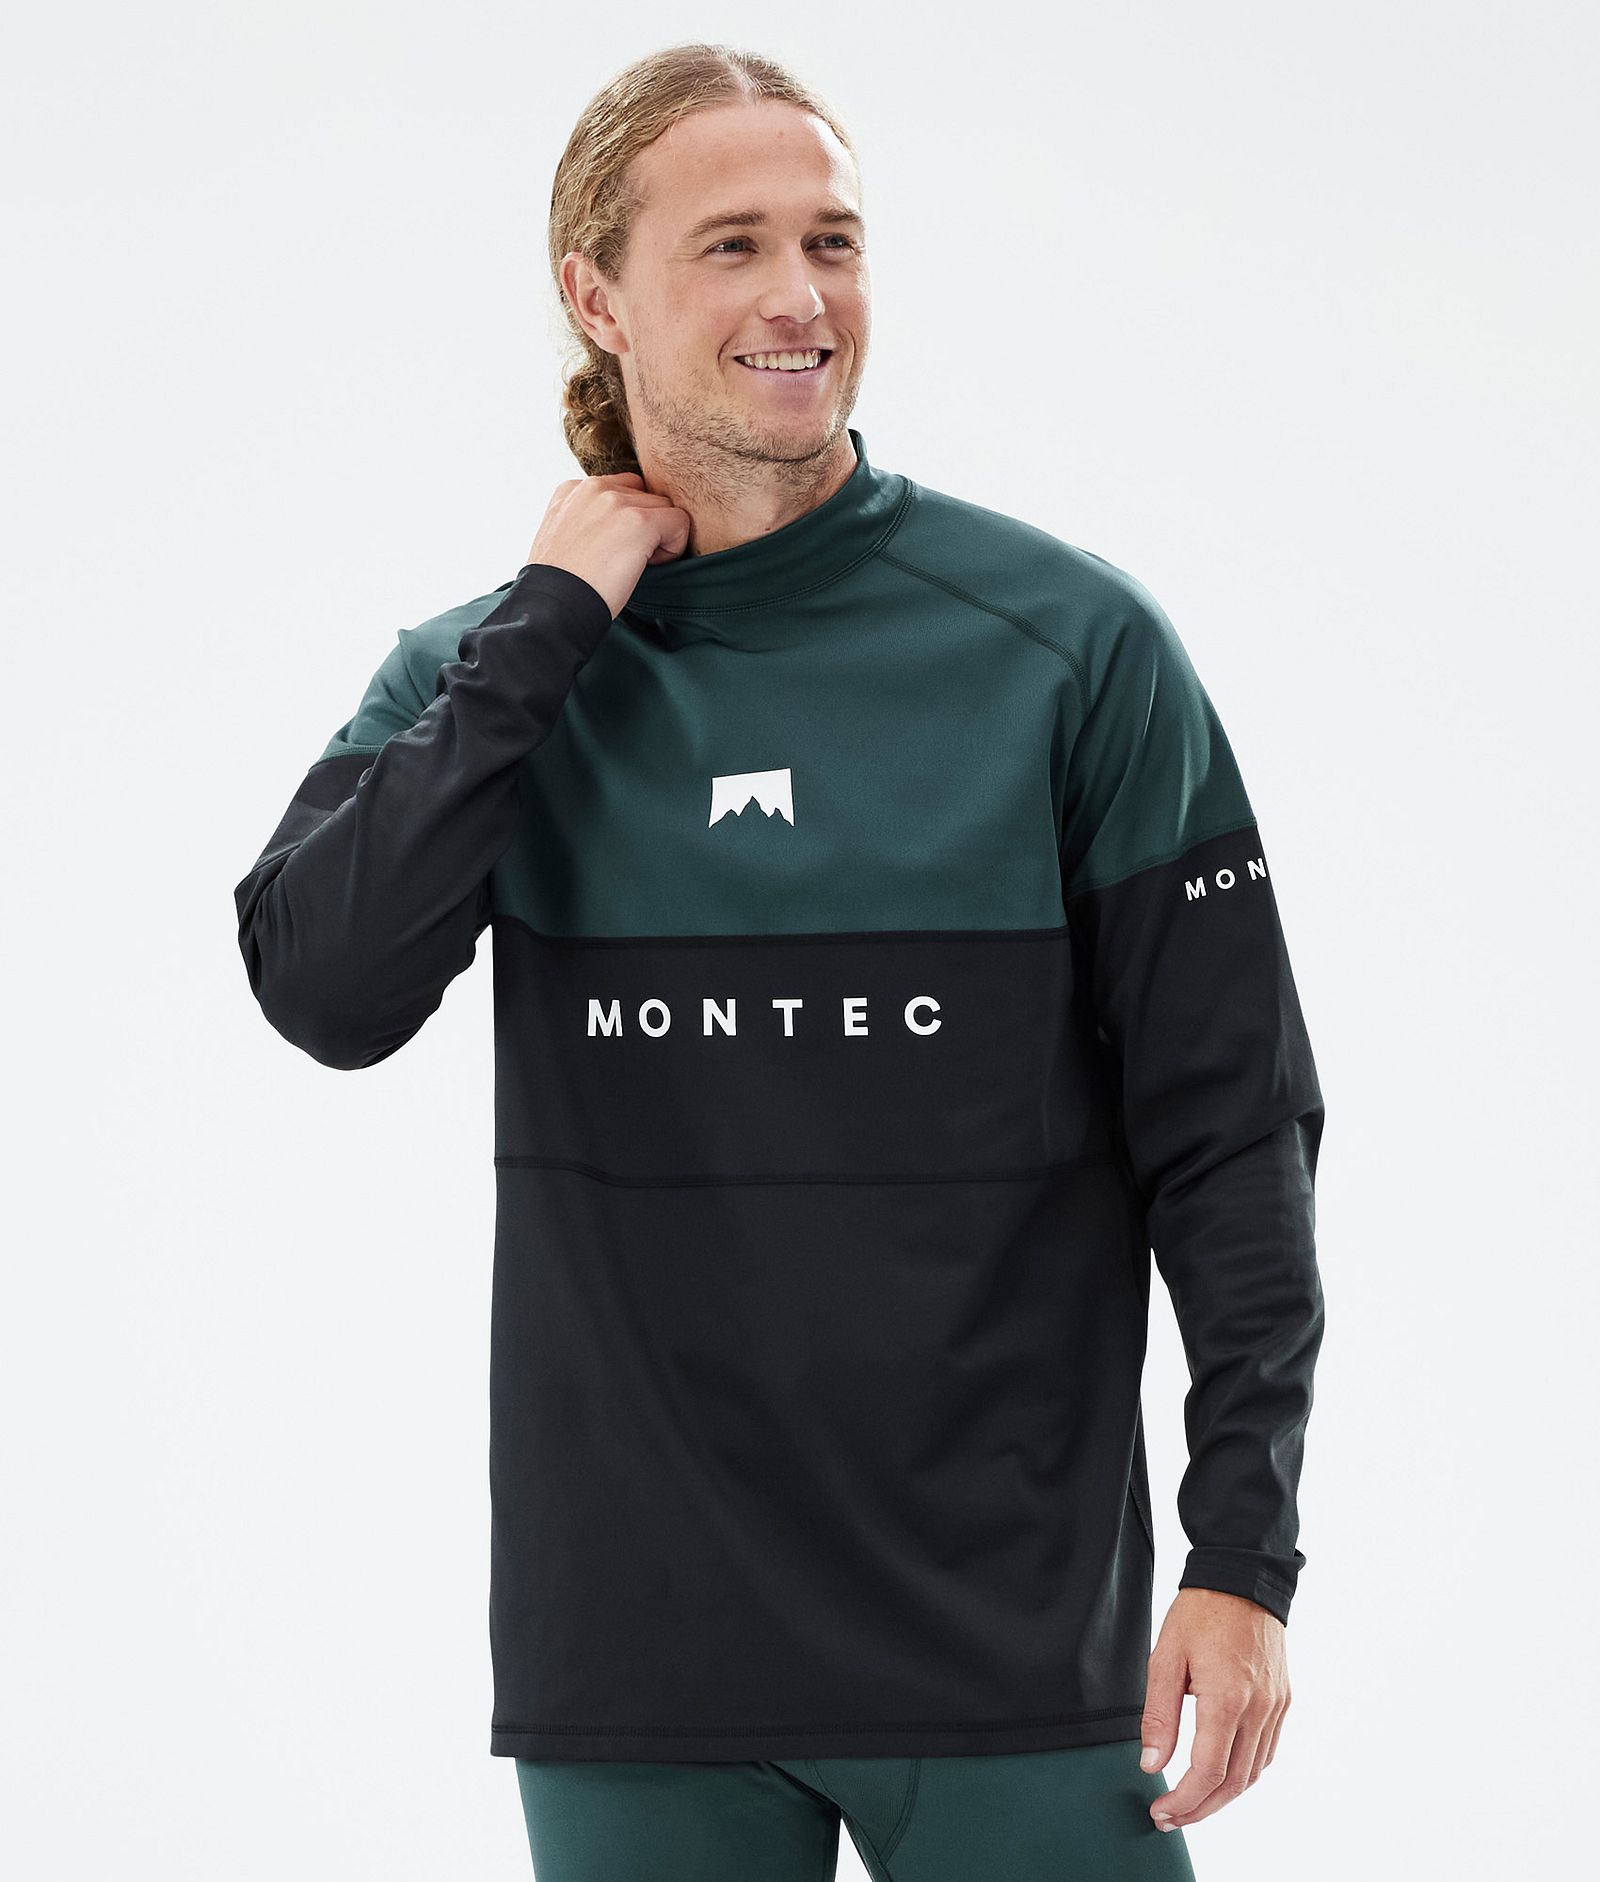 Montec Alpha Tee-shirt thermique Homme Dark Atlantic/Black - Vert